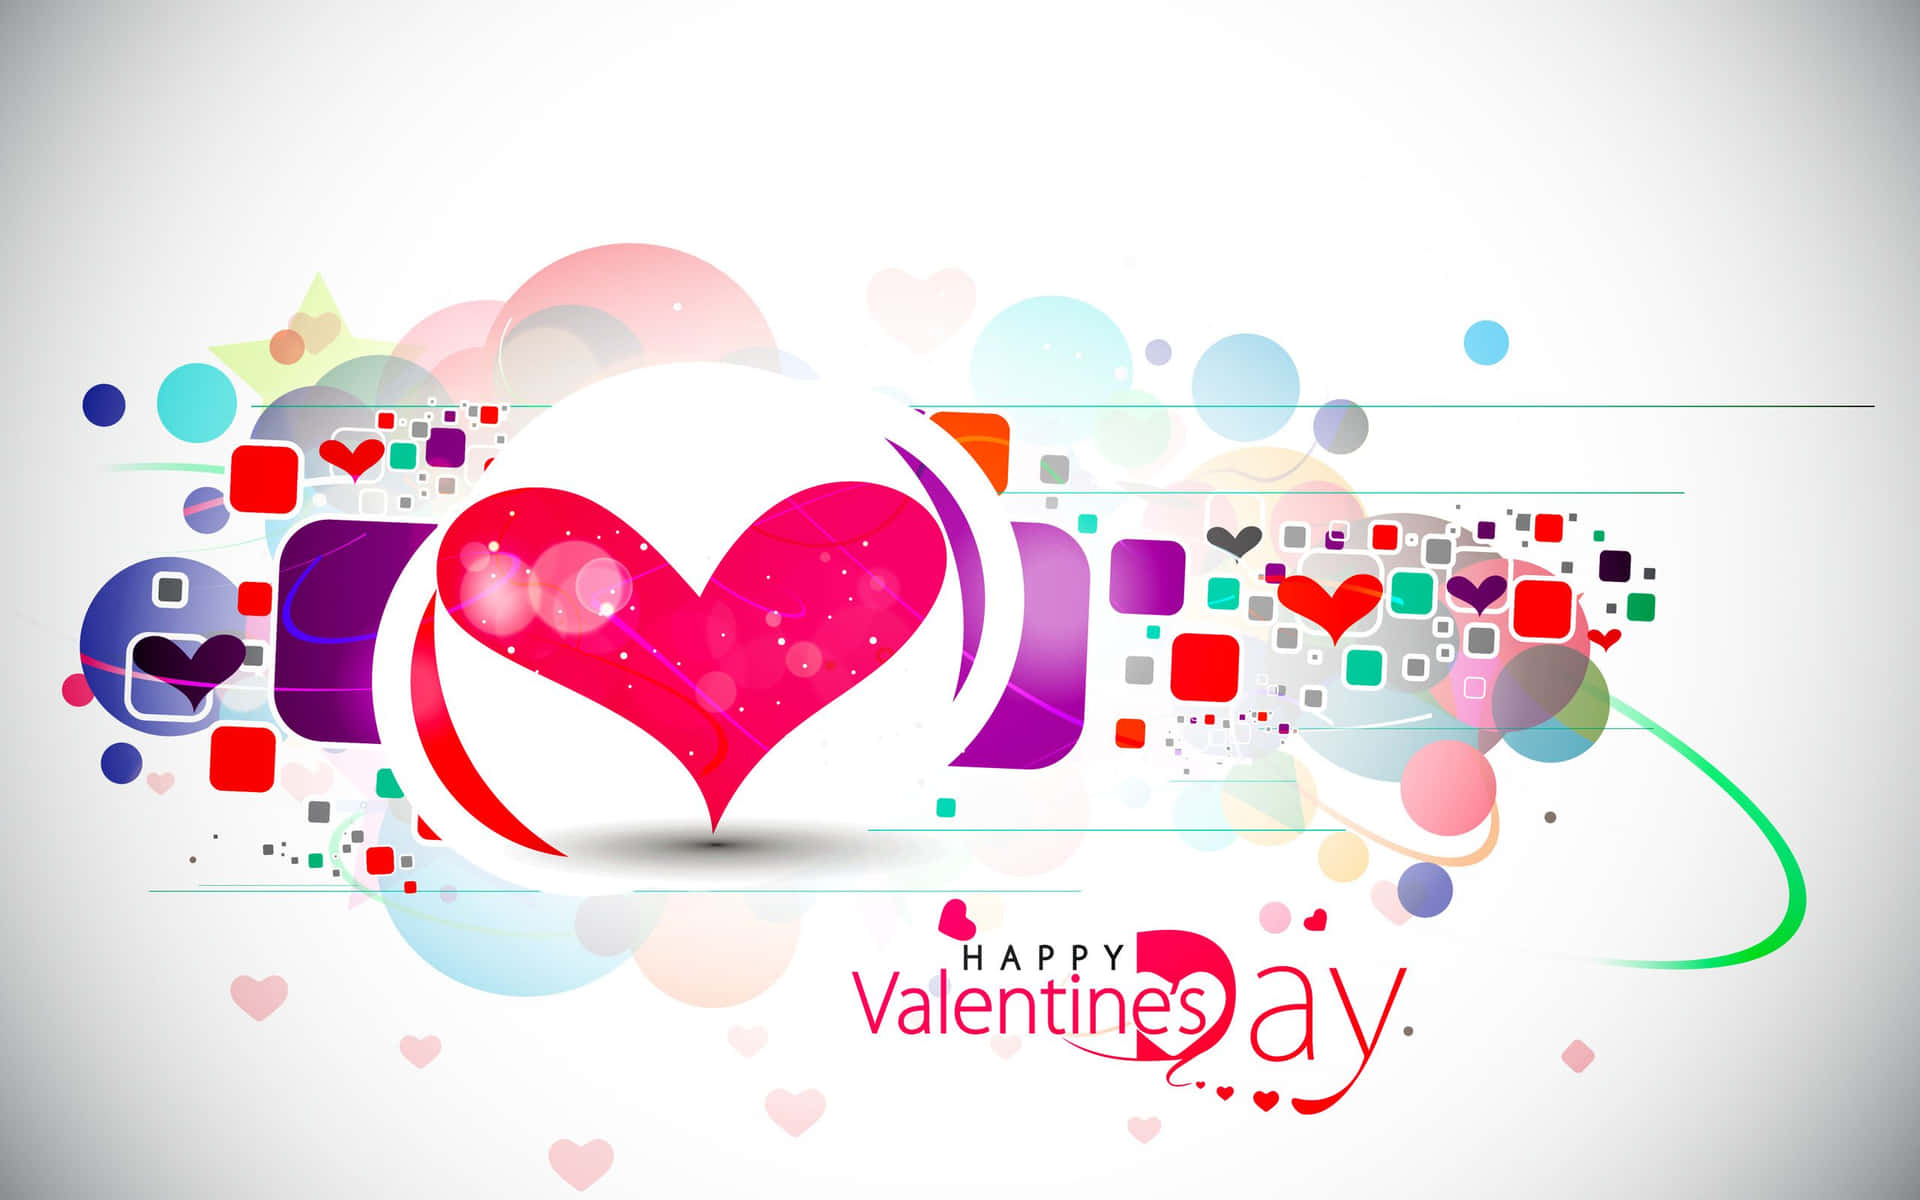 Fondosde Pantalla Para El Día De San Valentín Con Corazones Y Formas Coloridas